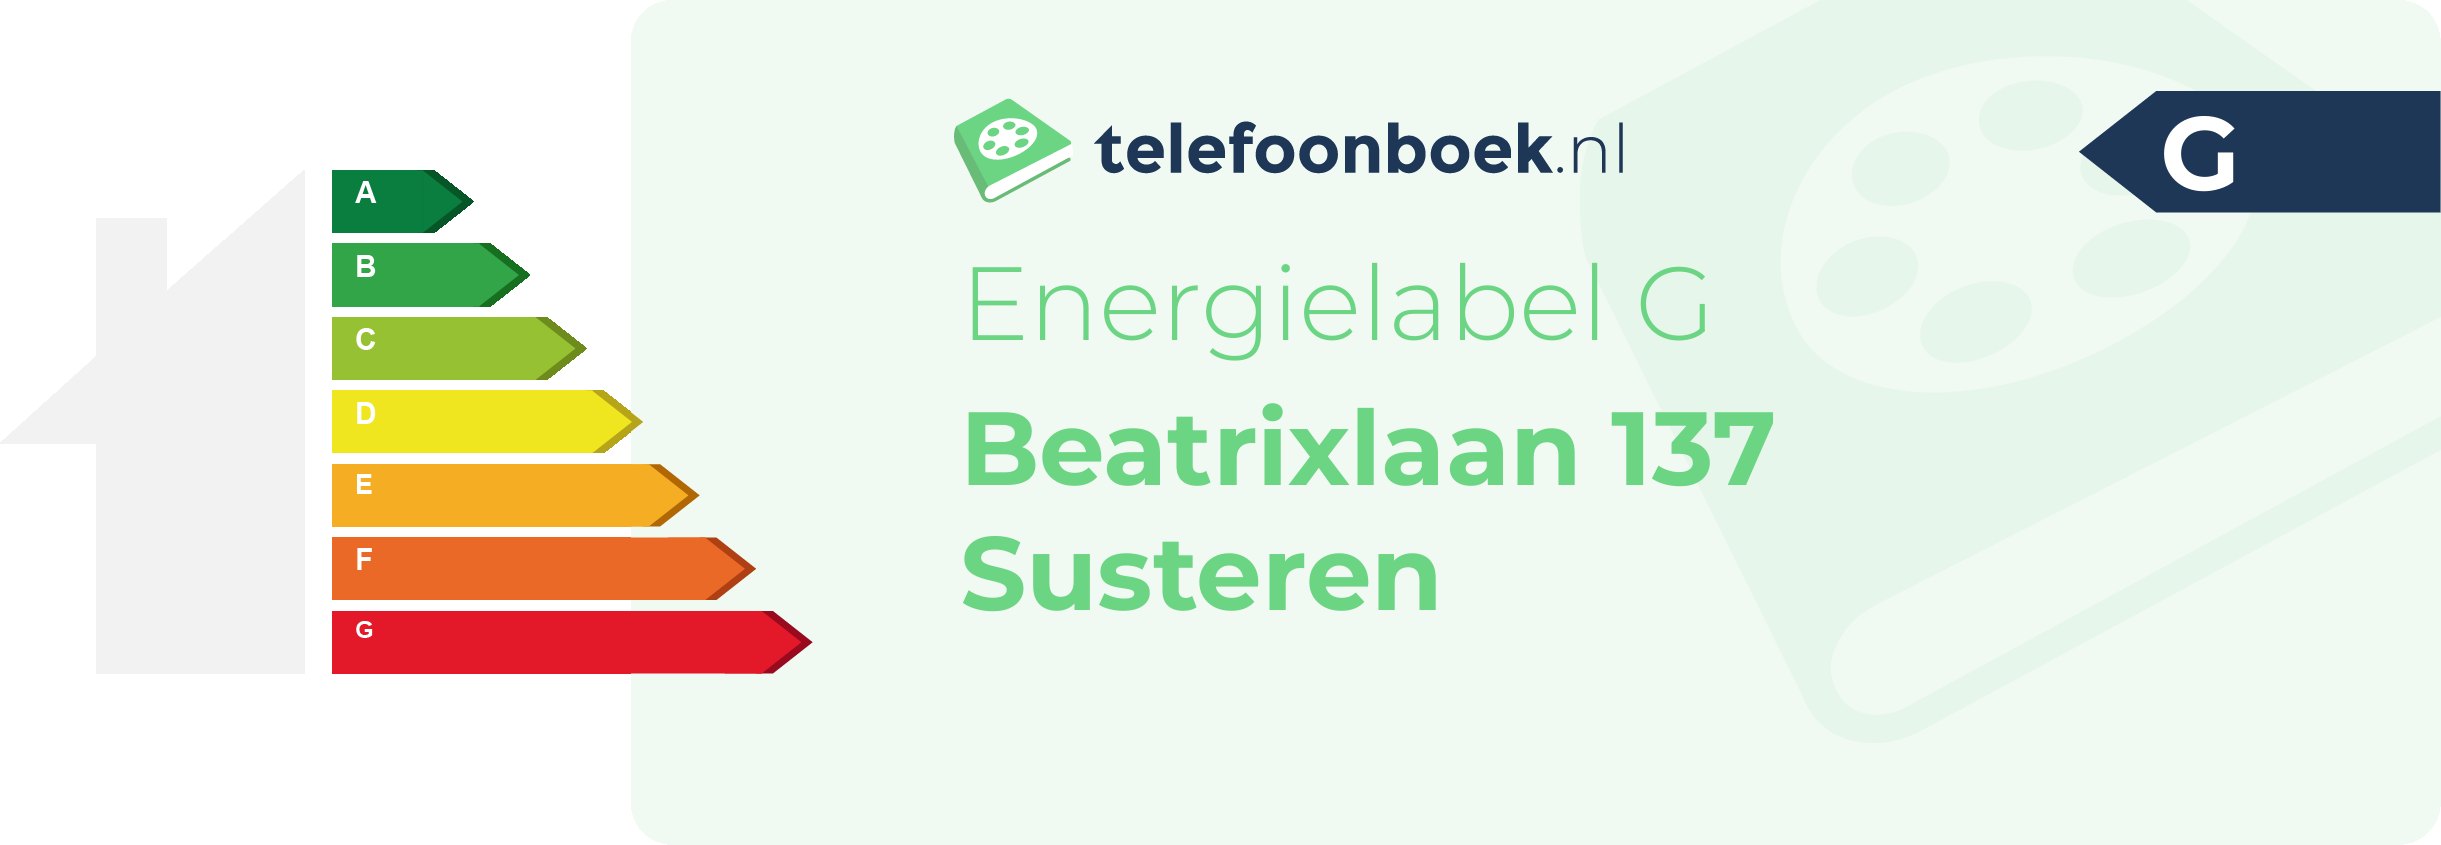 Energielabel Beatrixlaan 137 Susteren